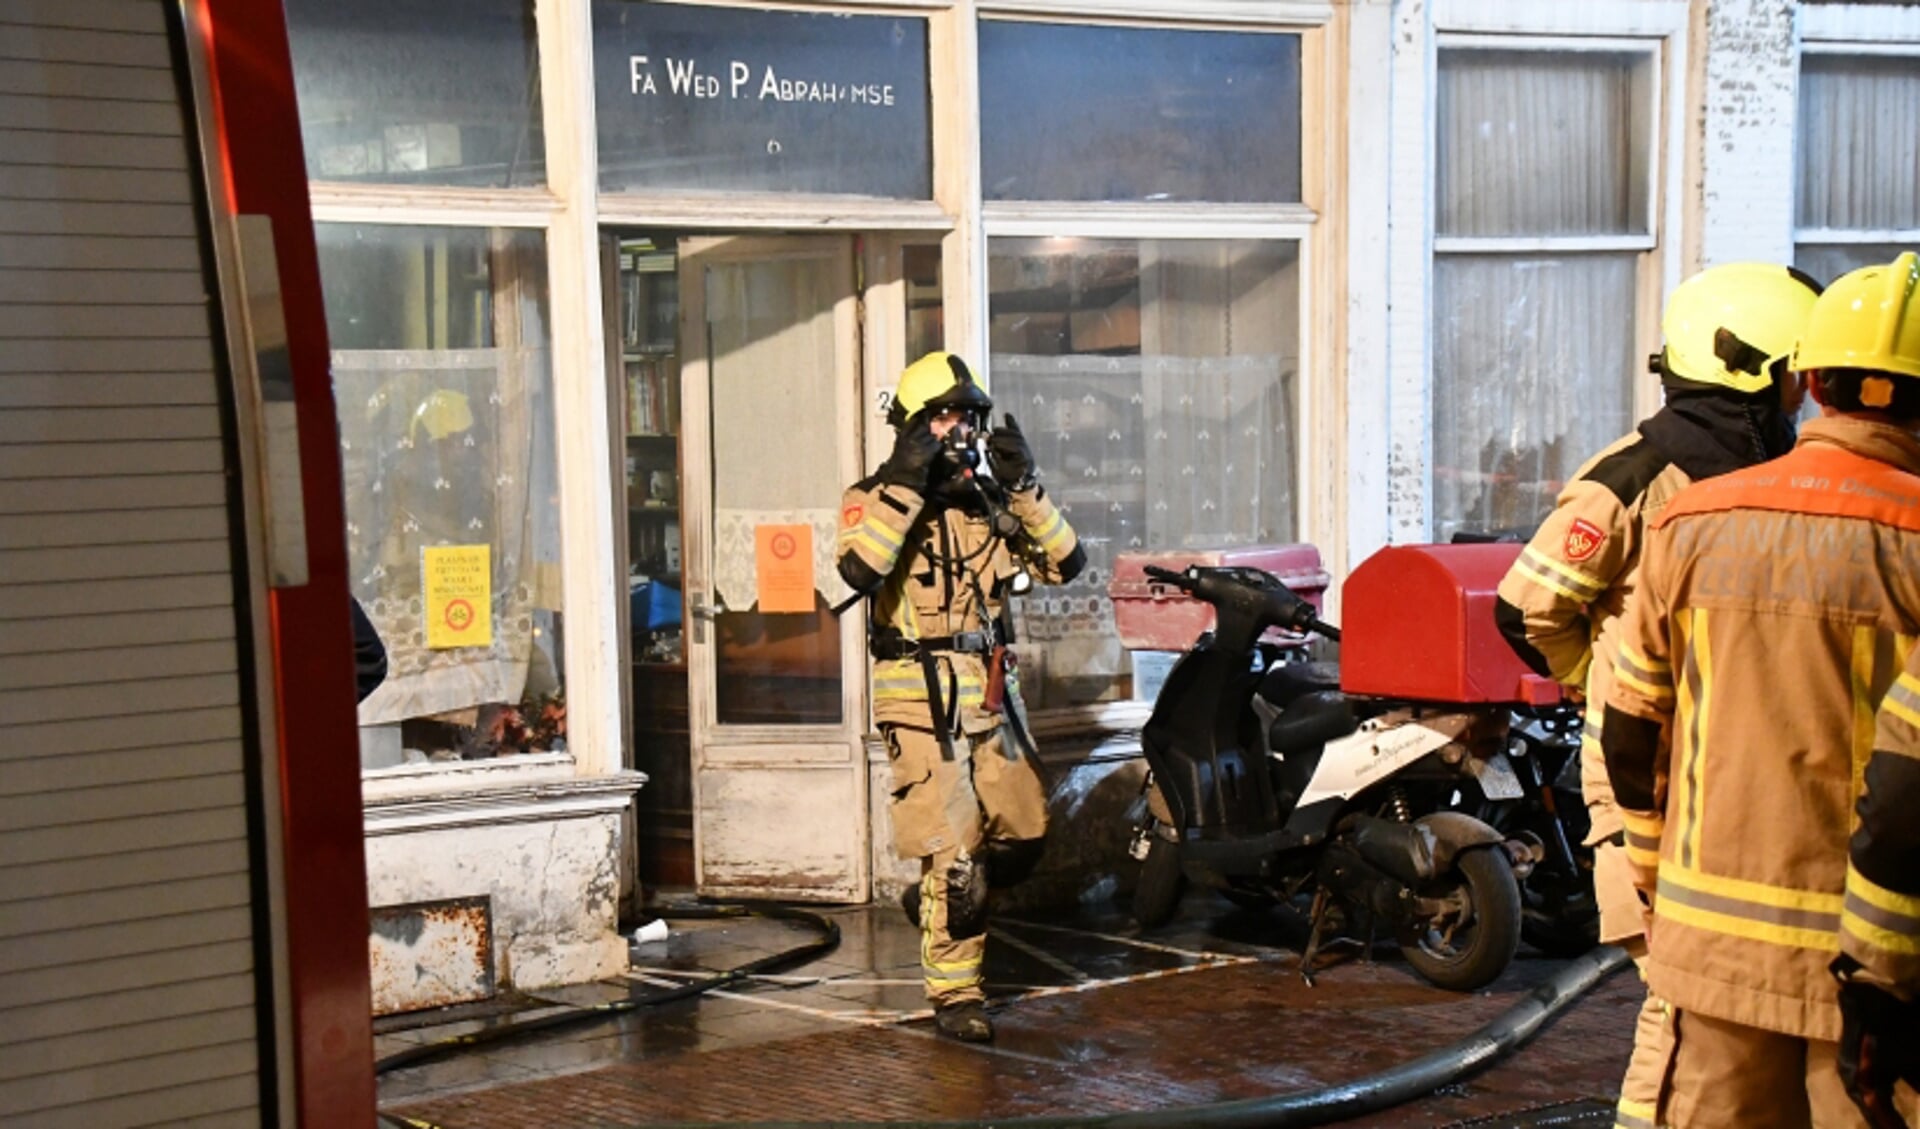 Een brandweerman verlaat het pand van de voormalige Fa. Wed. Abrahamse aan de Vlasmarkt